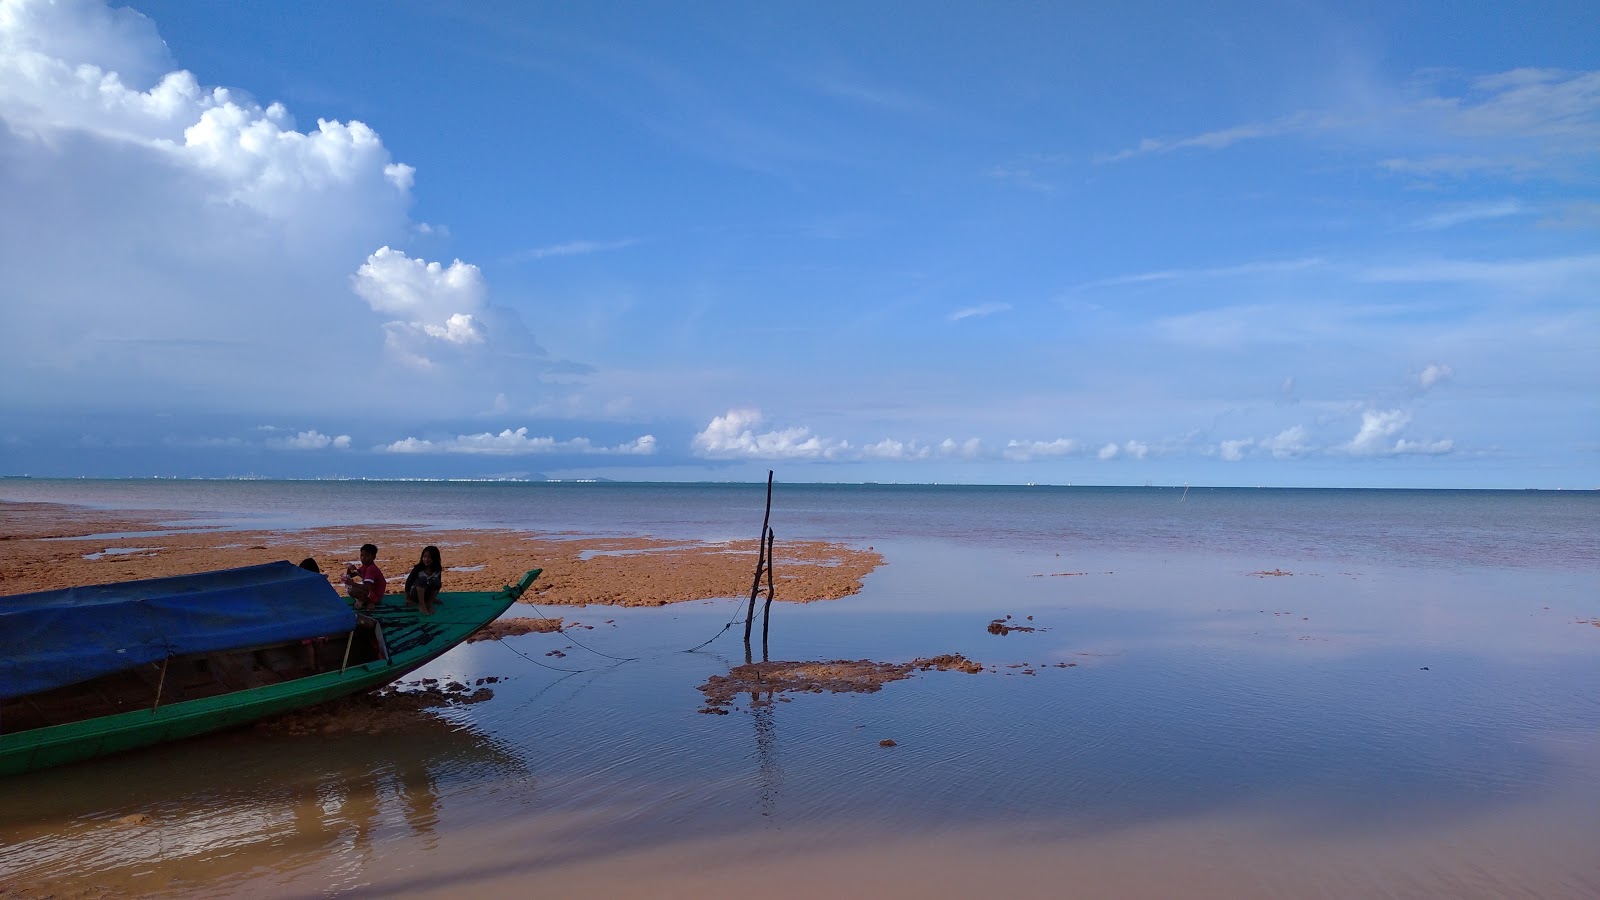 Pantai Tj. Bemban'in fotoğrafı imkanlar alanı